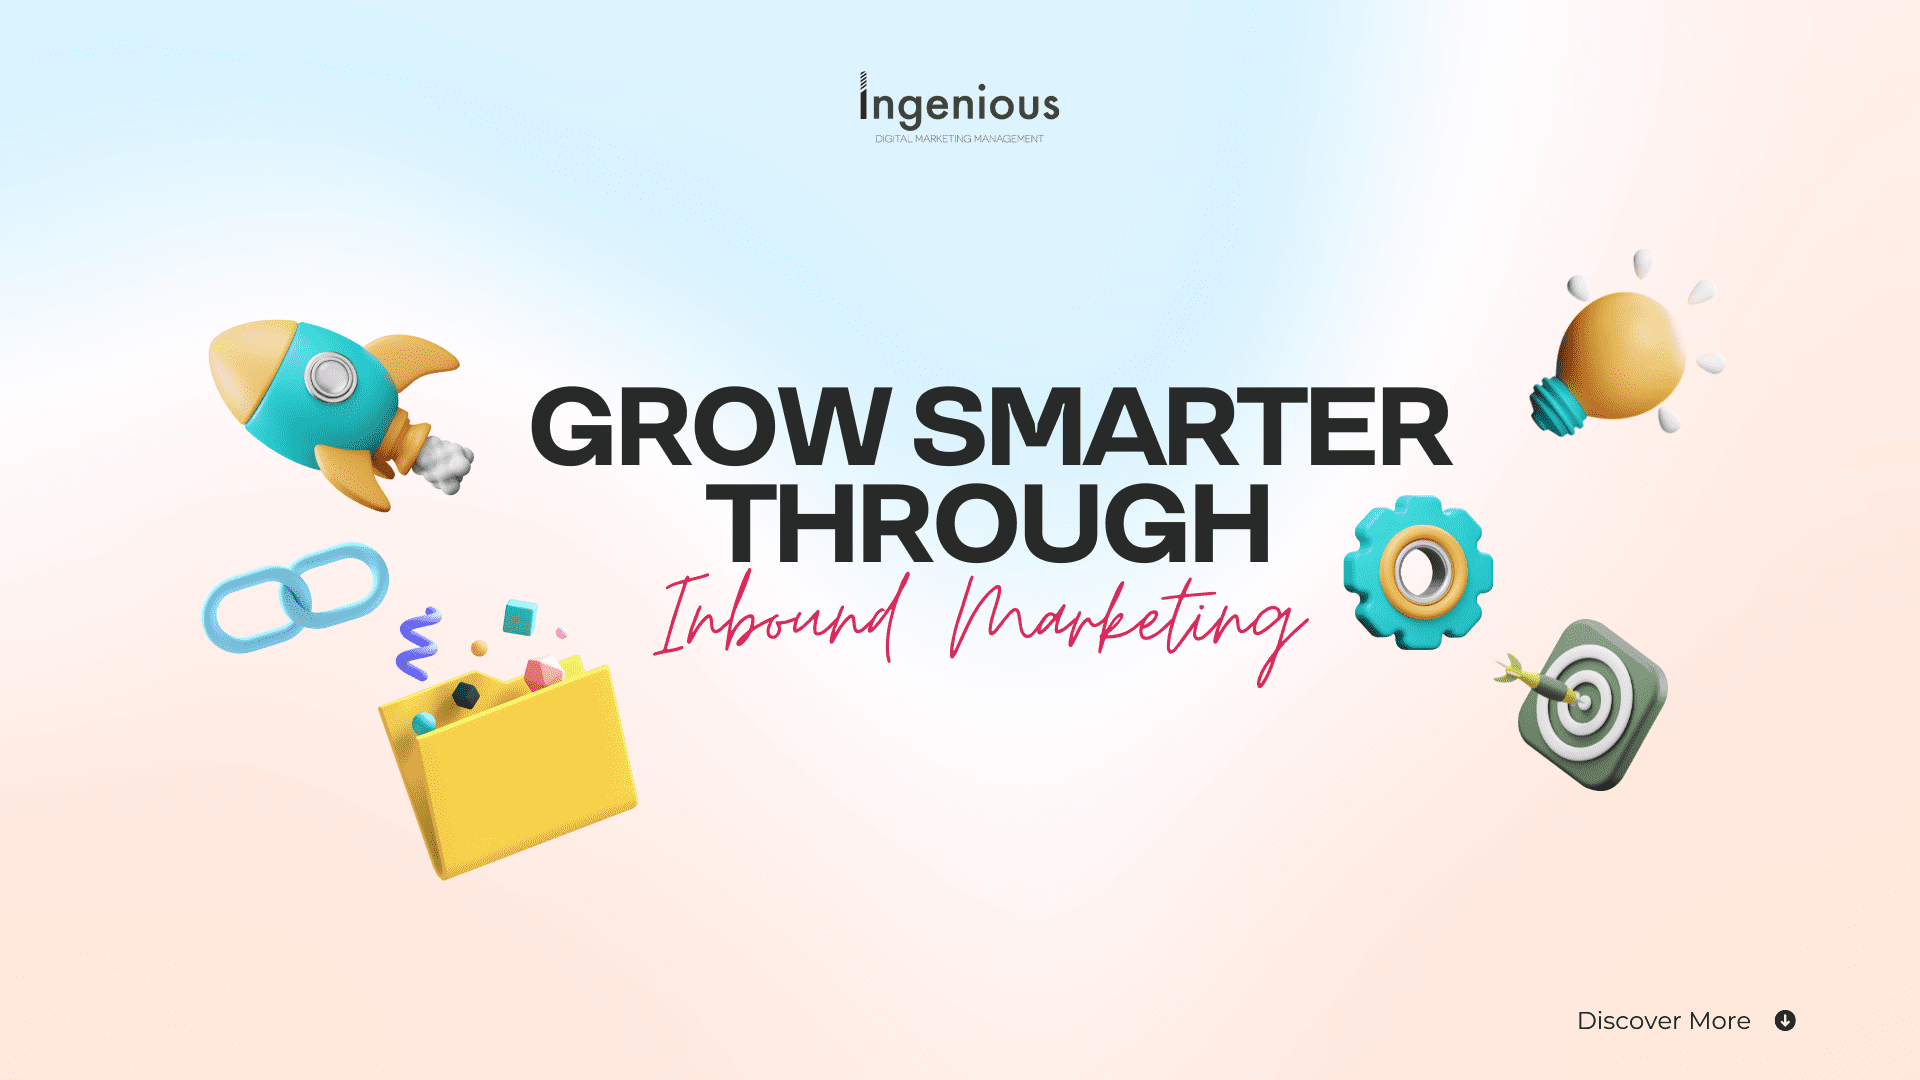 Grow Smarter Through Inbound Marketing